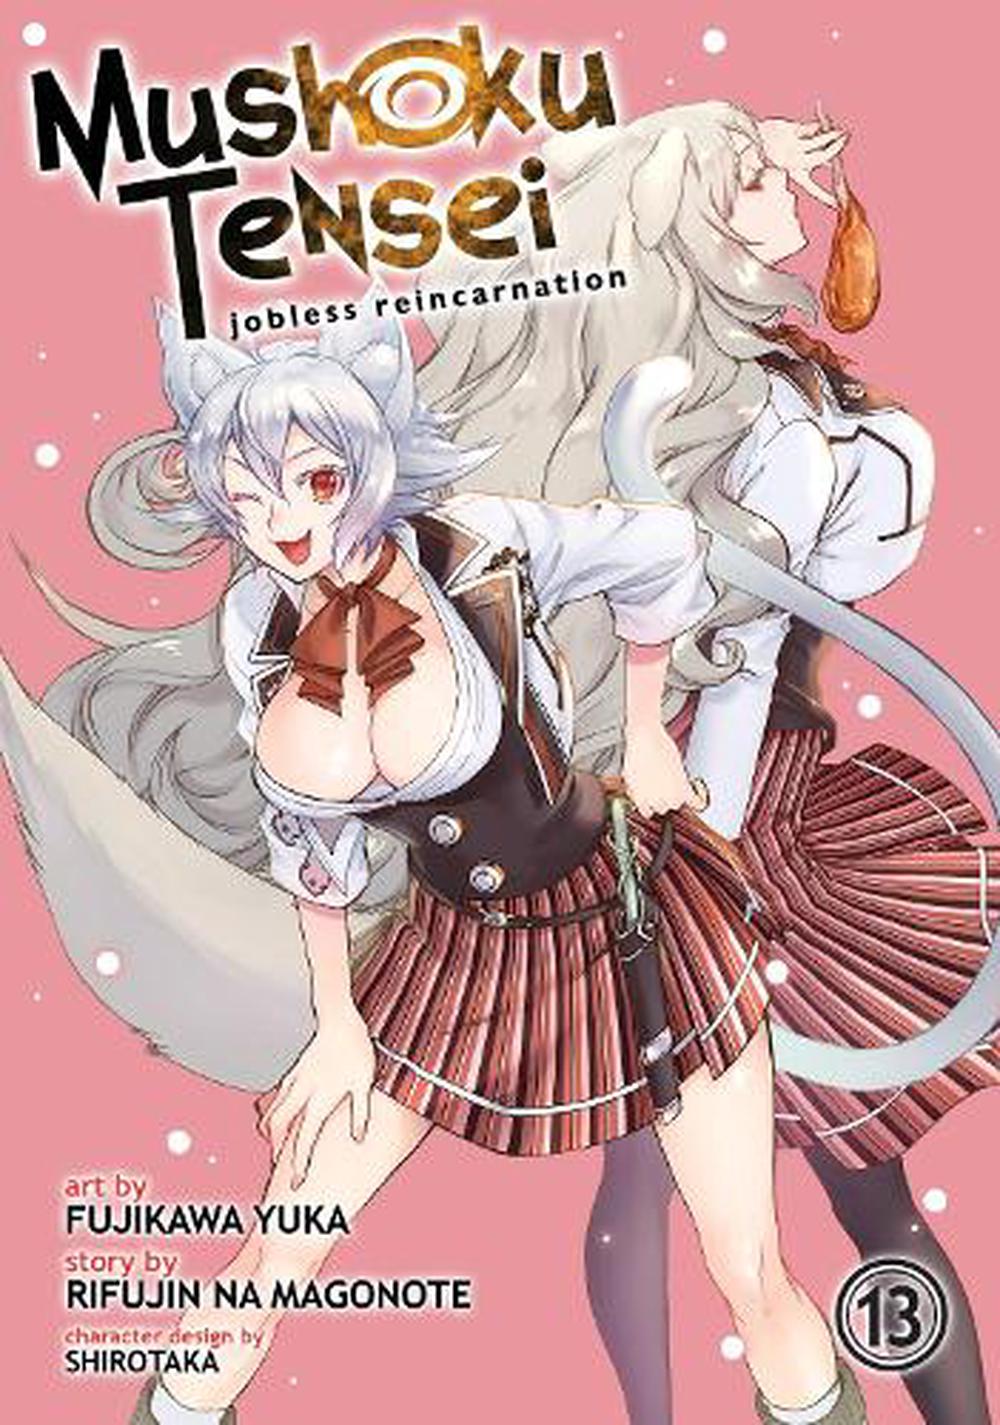 Mushoku Tensei: Jobless Reincarnation (Light Novel) Vol. 24 by